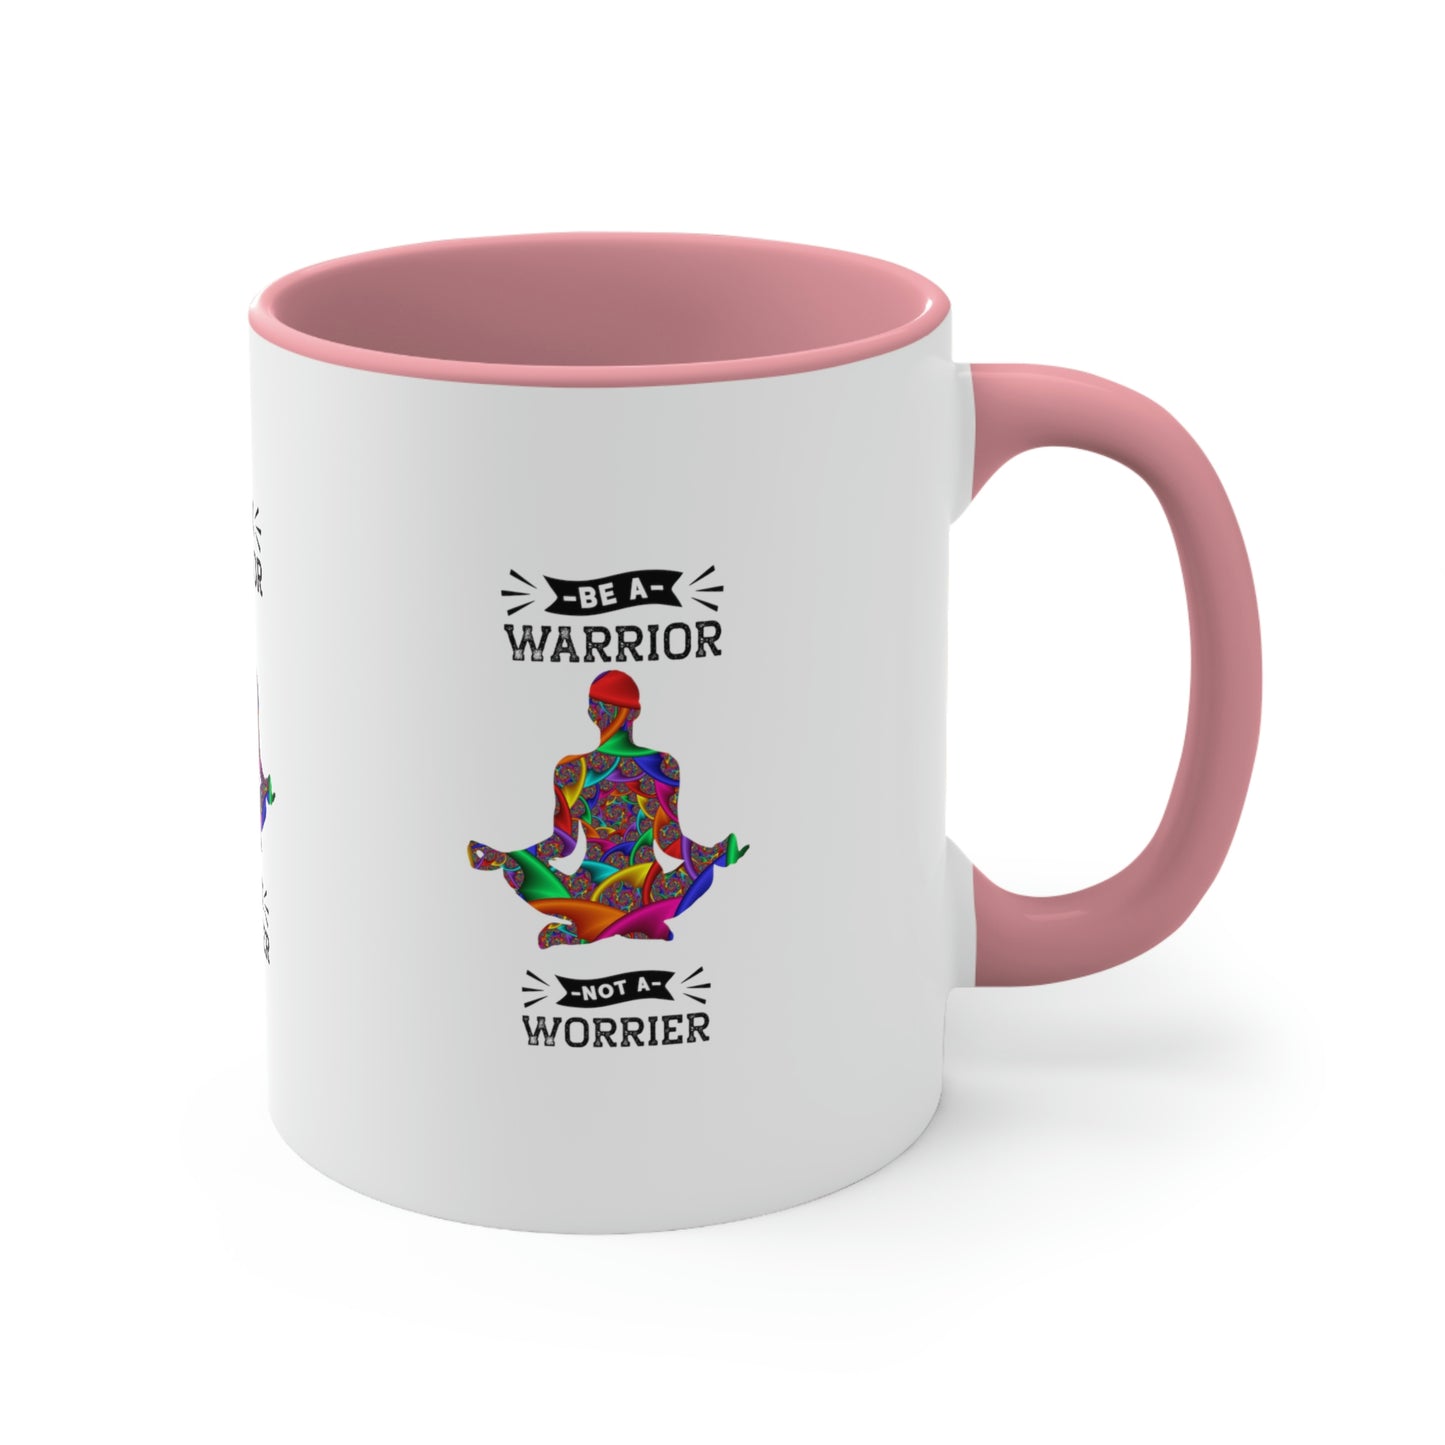 Be a Warrior Not a Worrier  Coffee Mug,